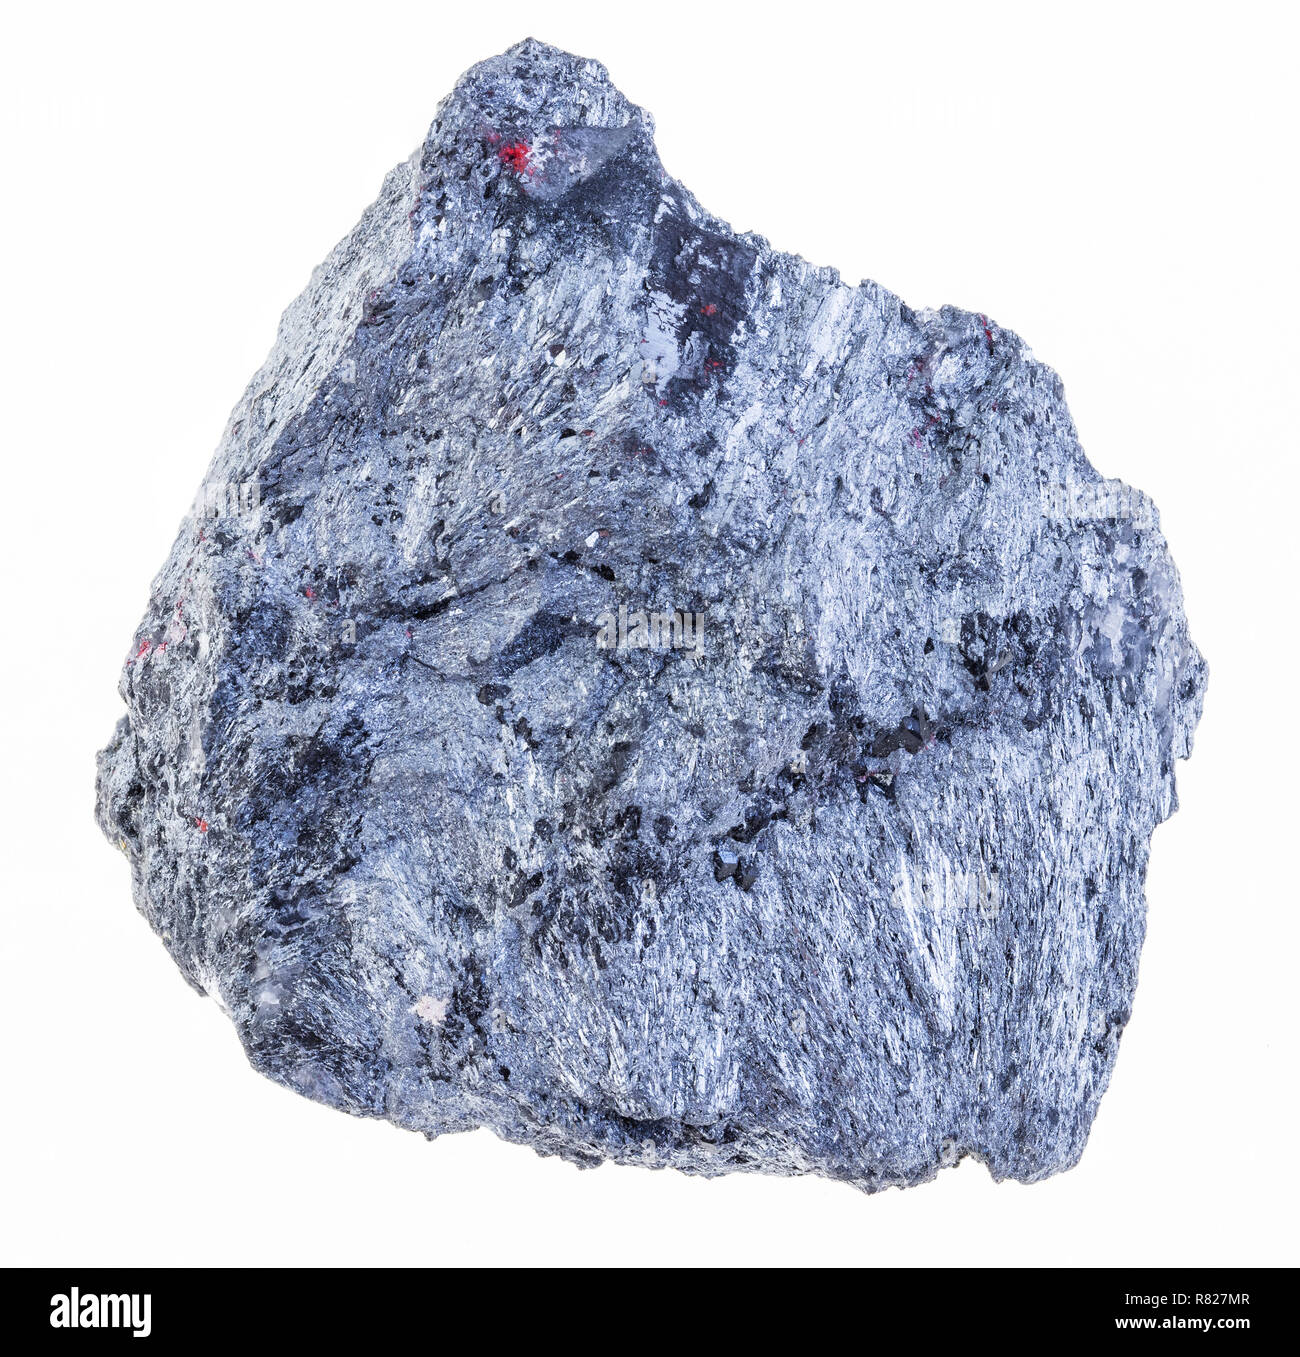 La macro photographie de minéraux naturels à partir de la collection géologique - rough antimonite stibnite (minerai) sur fond blanc Banque D'Images